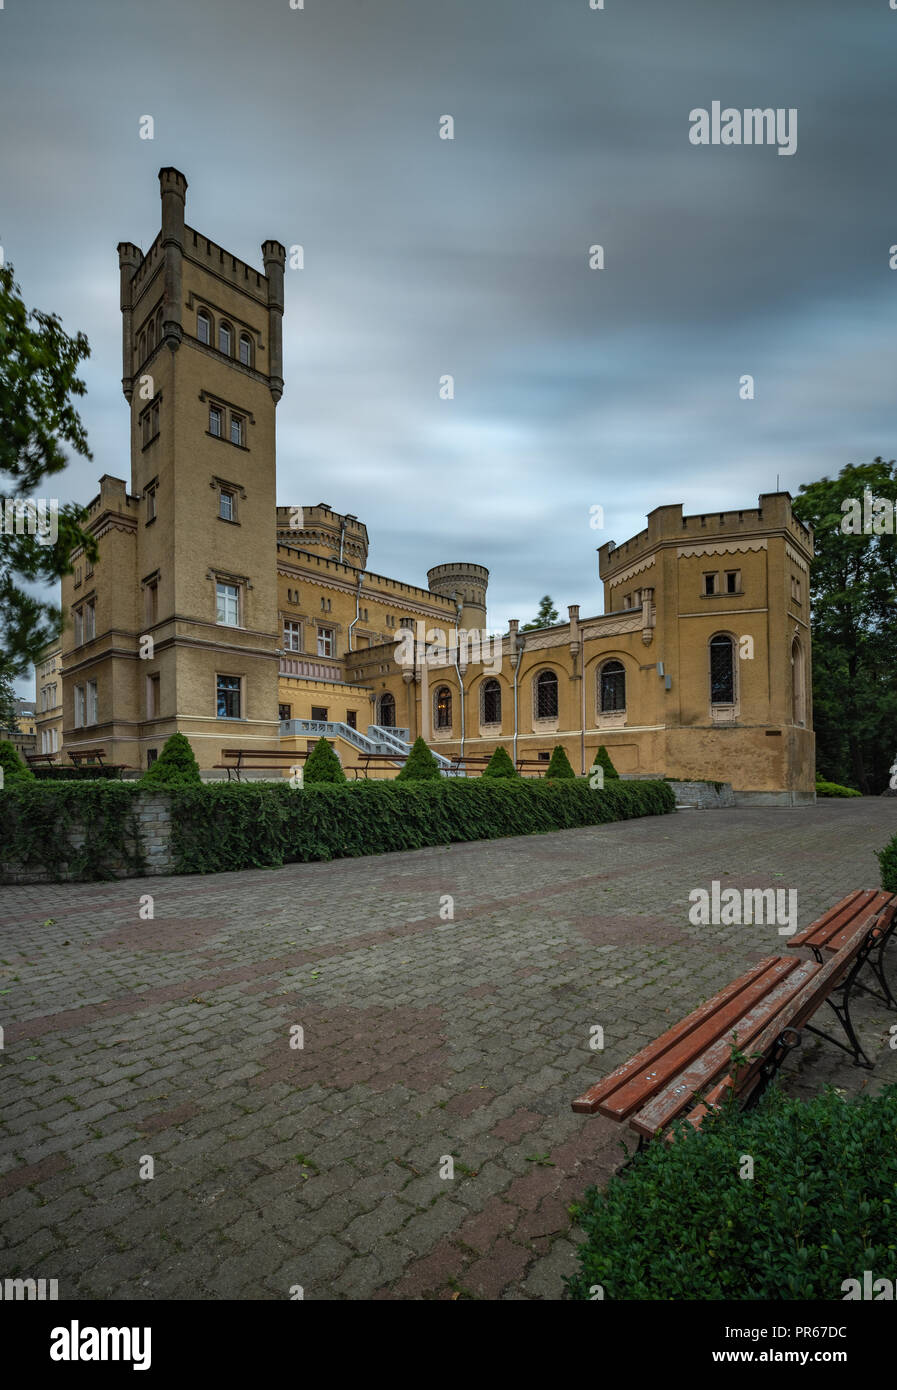 Neo-Gothic Palace , Jablonowo Pomorskie , Kuyavian-Pomeranian Voivodeship, Poland Stock Photo